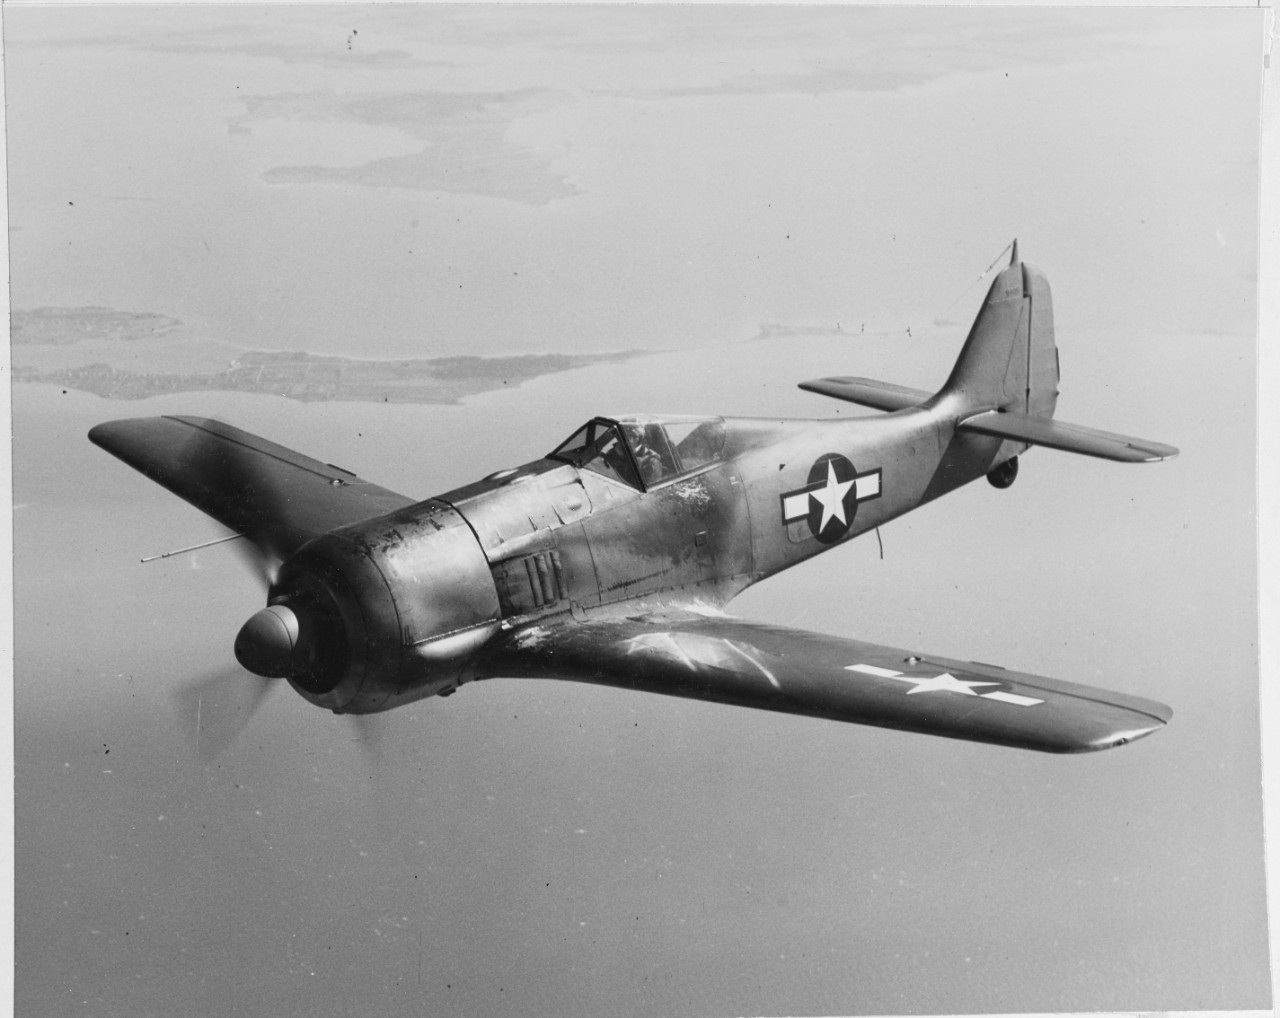 German FW. 190A Würger